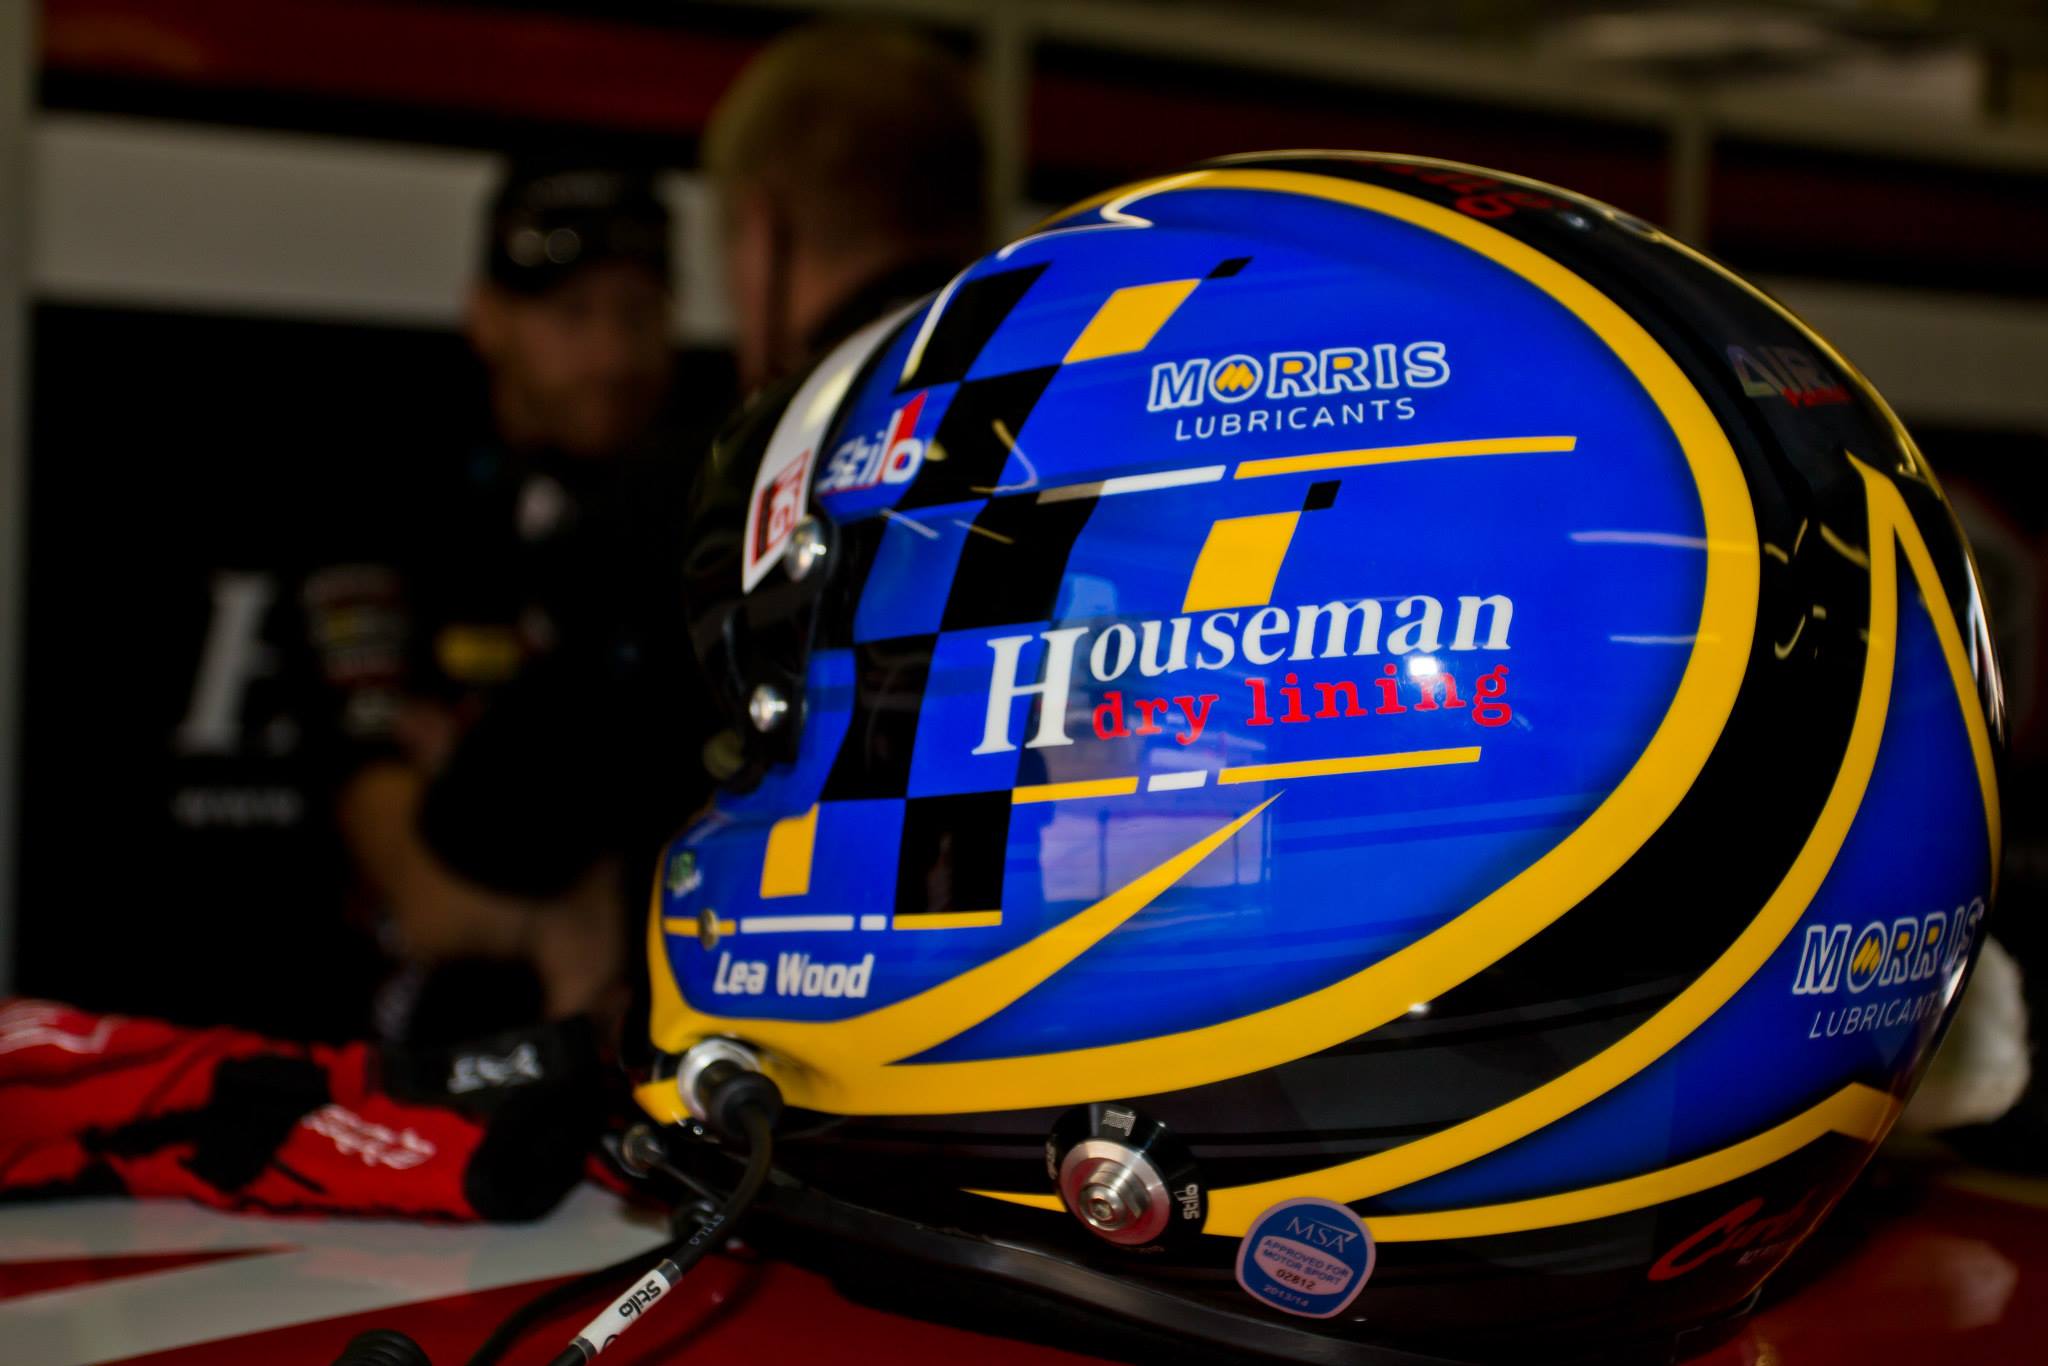 Lea Wood helmet 2014 Houseman Racing